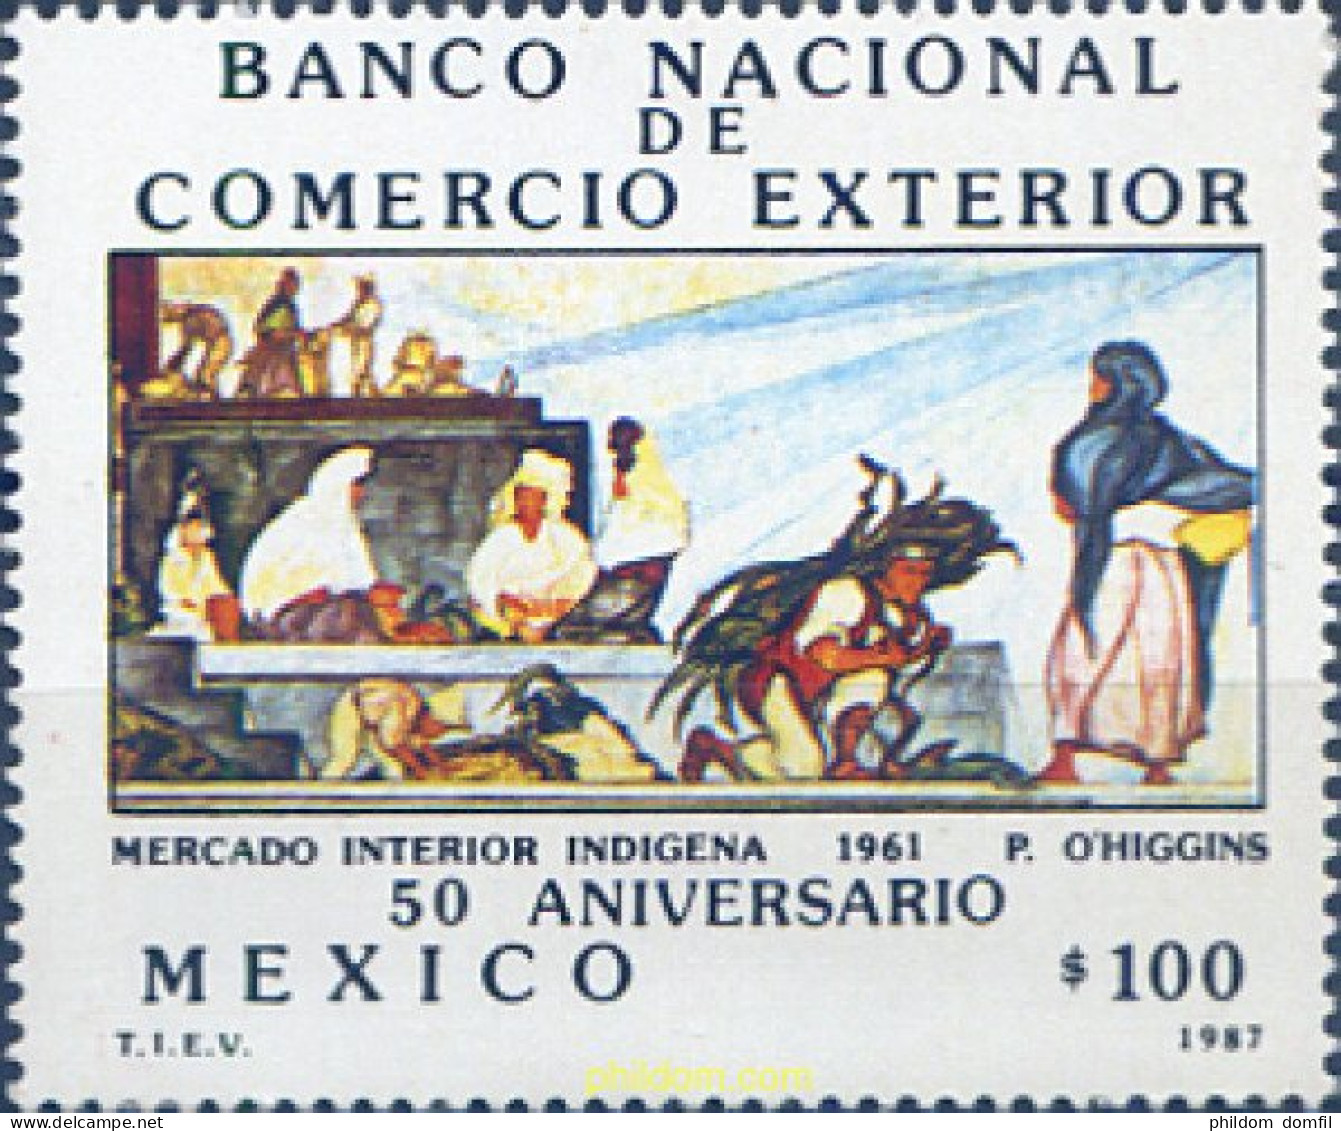 343326 MNH MEXICO 1987 BANCO NACIONAL DE COMERCIO EXTERIOR - Mexique